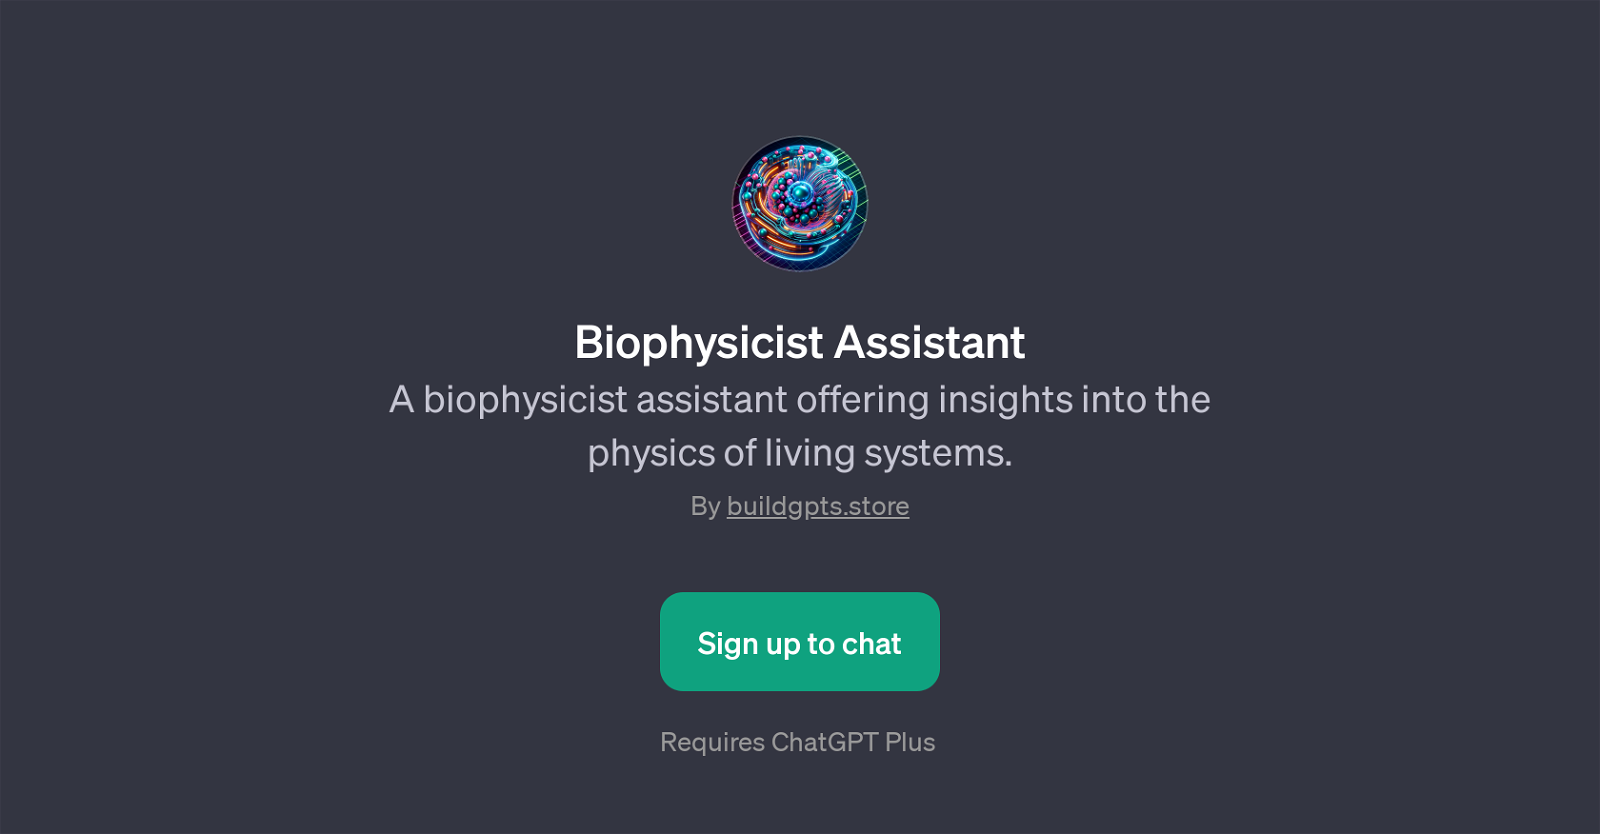 Biophysicist Assistant website